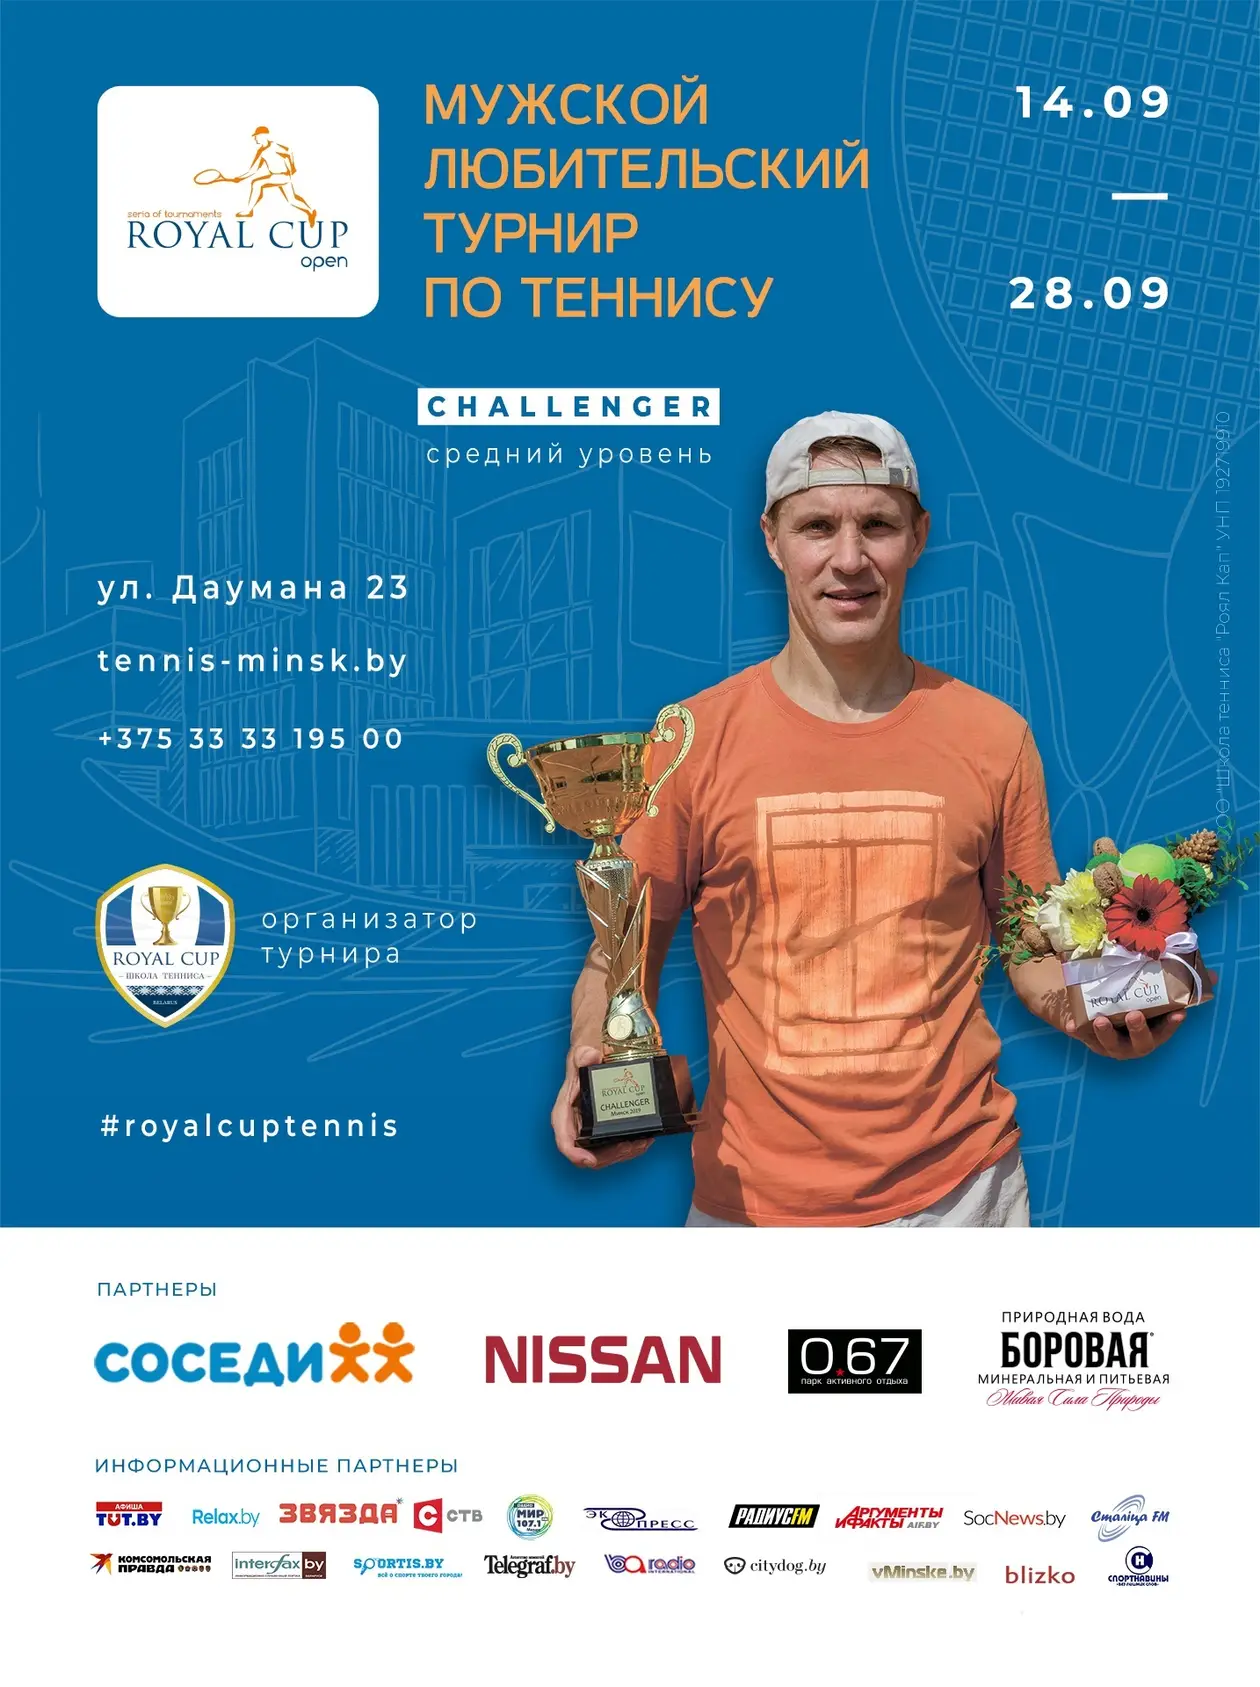 Мужской любительский турнир Royal Cup Open пройдёт в Минске